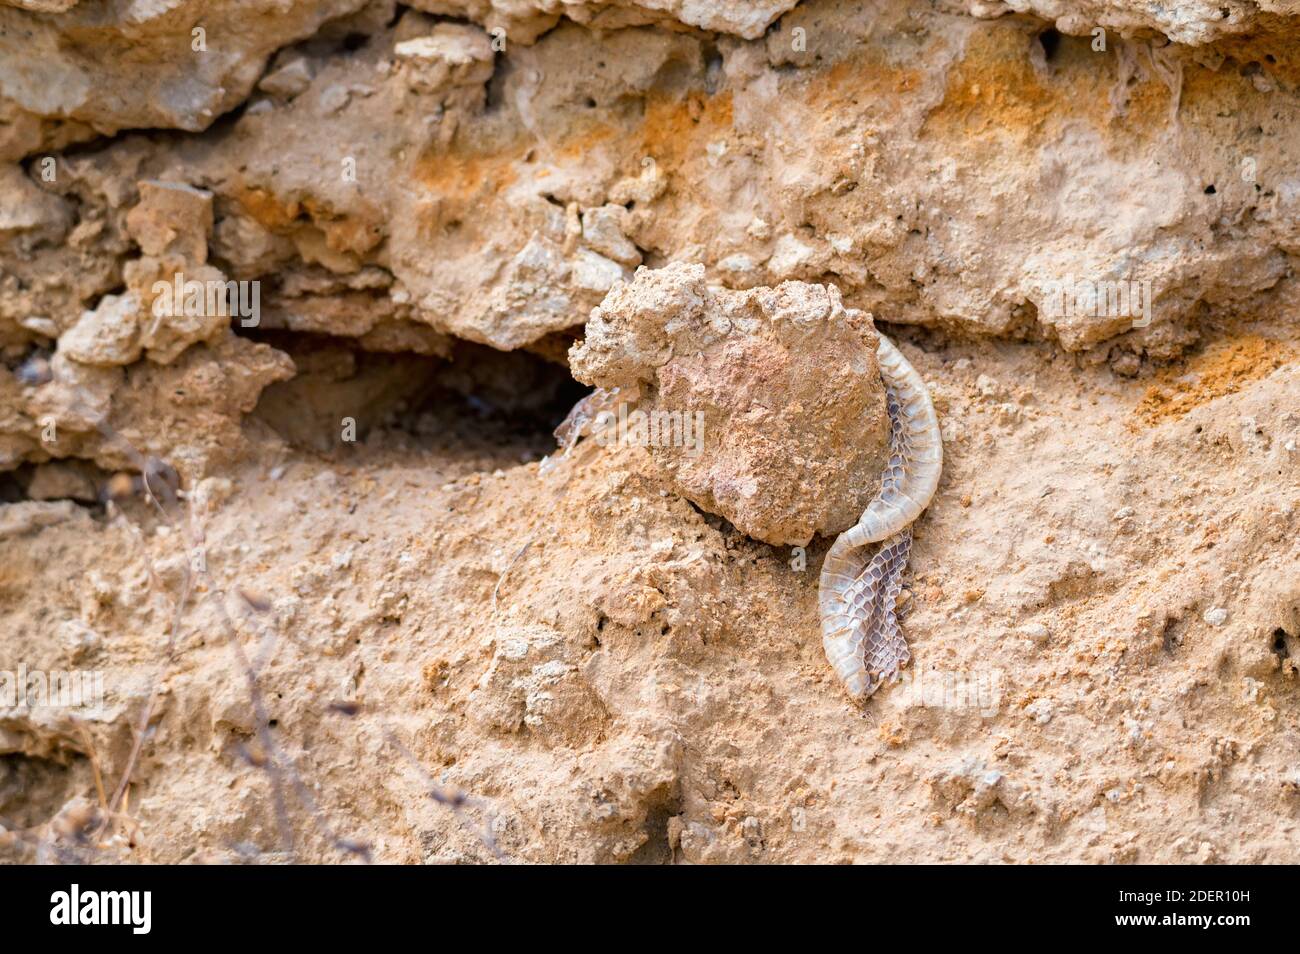 Immagine ravvicinata della pelle di serpente molata lasciata sulla pietra Foto Stock